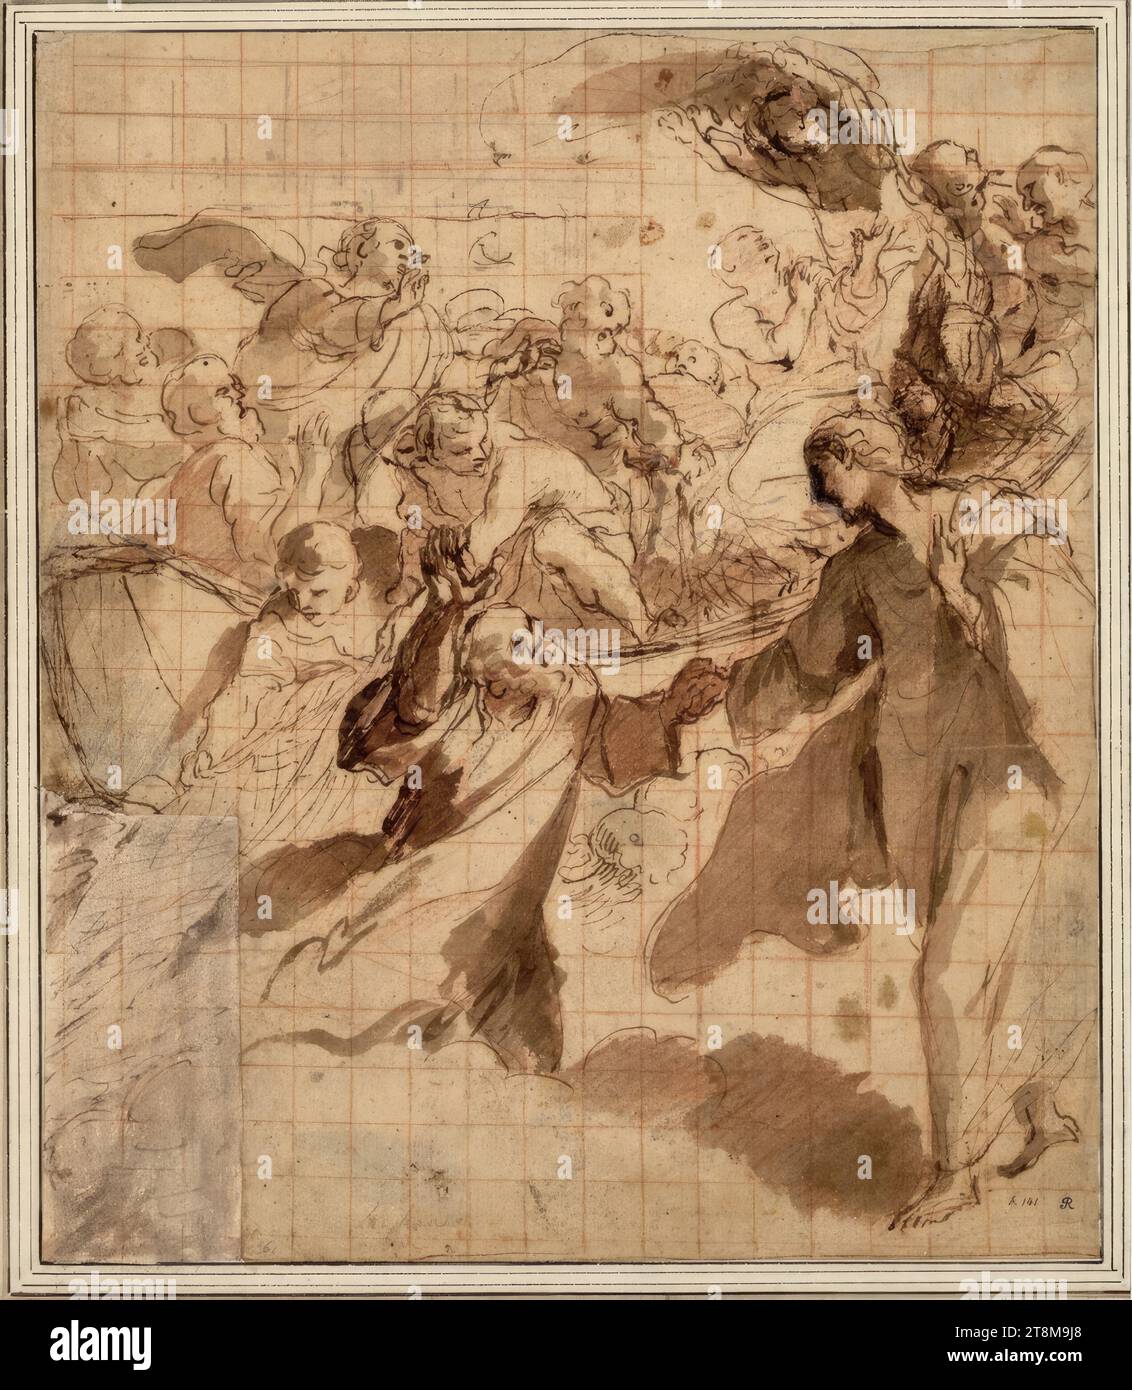 Christus und Petrus auf dem See Tiberias, Giovanni Lanfranco (Parma 1582 - 1647 Rom), vor 1631, Zeichnung, Feder, laviert, mit Kohle und Rötel quadriert, 30.9 x 26.6 cm, r.u. Richardson sen; l.u. Herzog Albert von Sachsen-Teschen, in der Mi.u.in alter Hand 'Lanfranco'; king. Resta-Nummer 'h.141'(British Museum, Lansdowne Ms. 803); links unten, neben dem Albert Sz, alte Kreidenummer '61'; auf der Rs., wohl in der Hand Richardsons 'Nr. 61. After he had planted (!) the great work in S. Andrea della Valle; t'was before he went to naples,' und (Bellori-Textstelle): ''D.D.7R. Afterwards Stock Photo